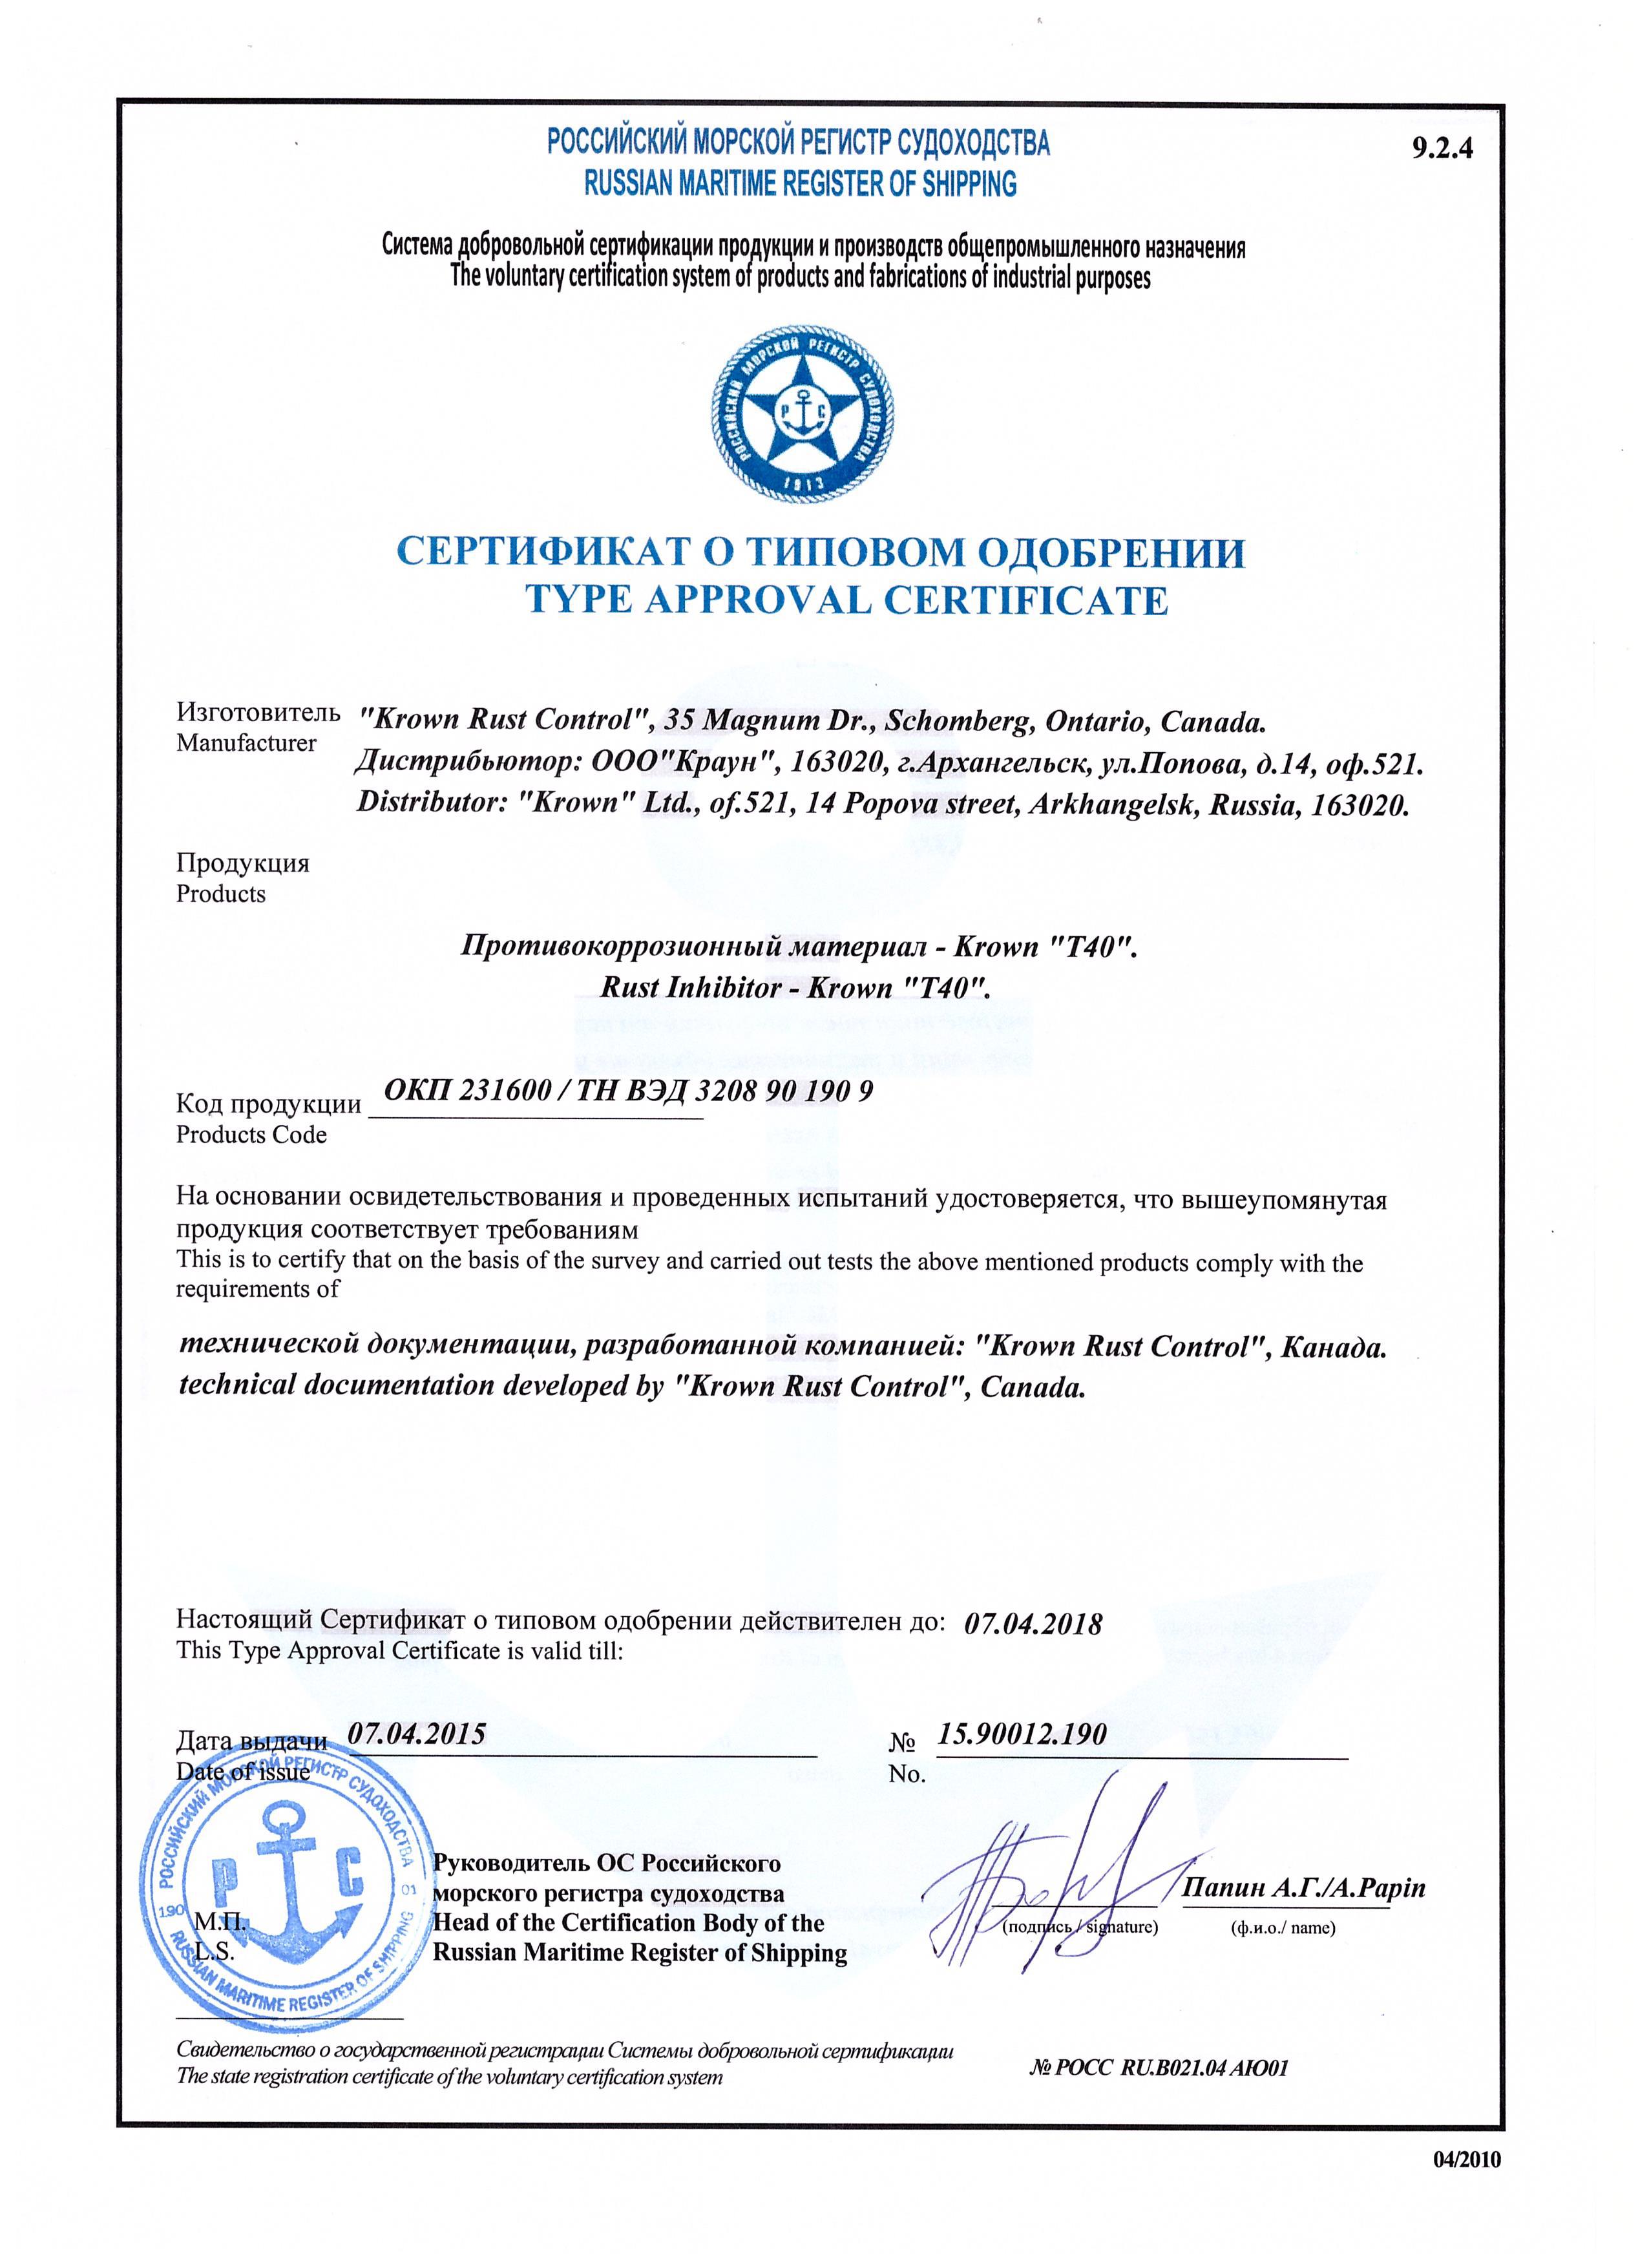 Сертификат Российского Морского Регистра Судоходства (1)